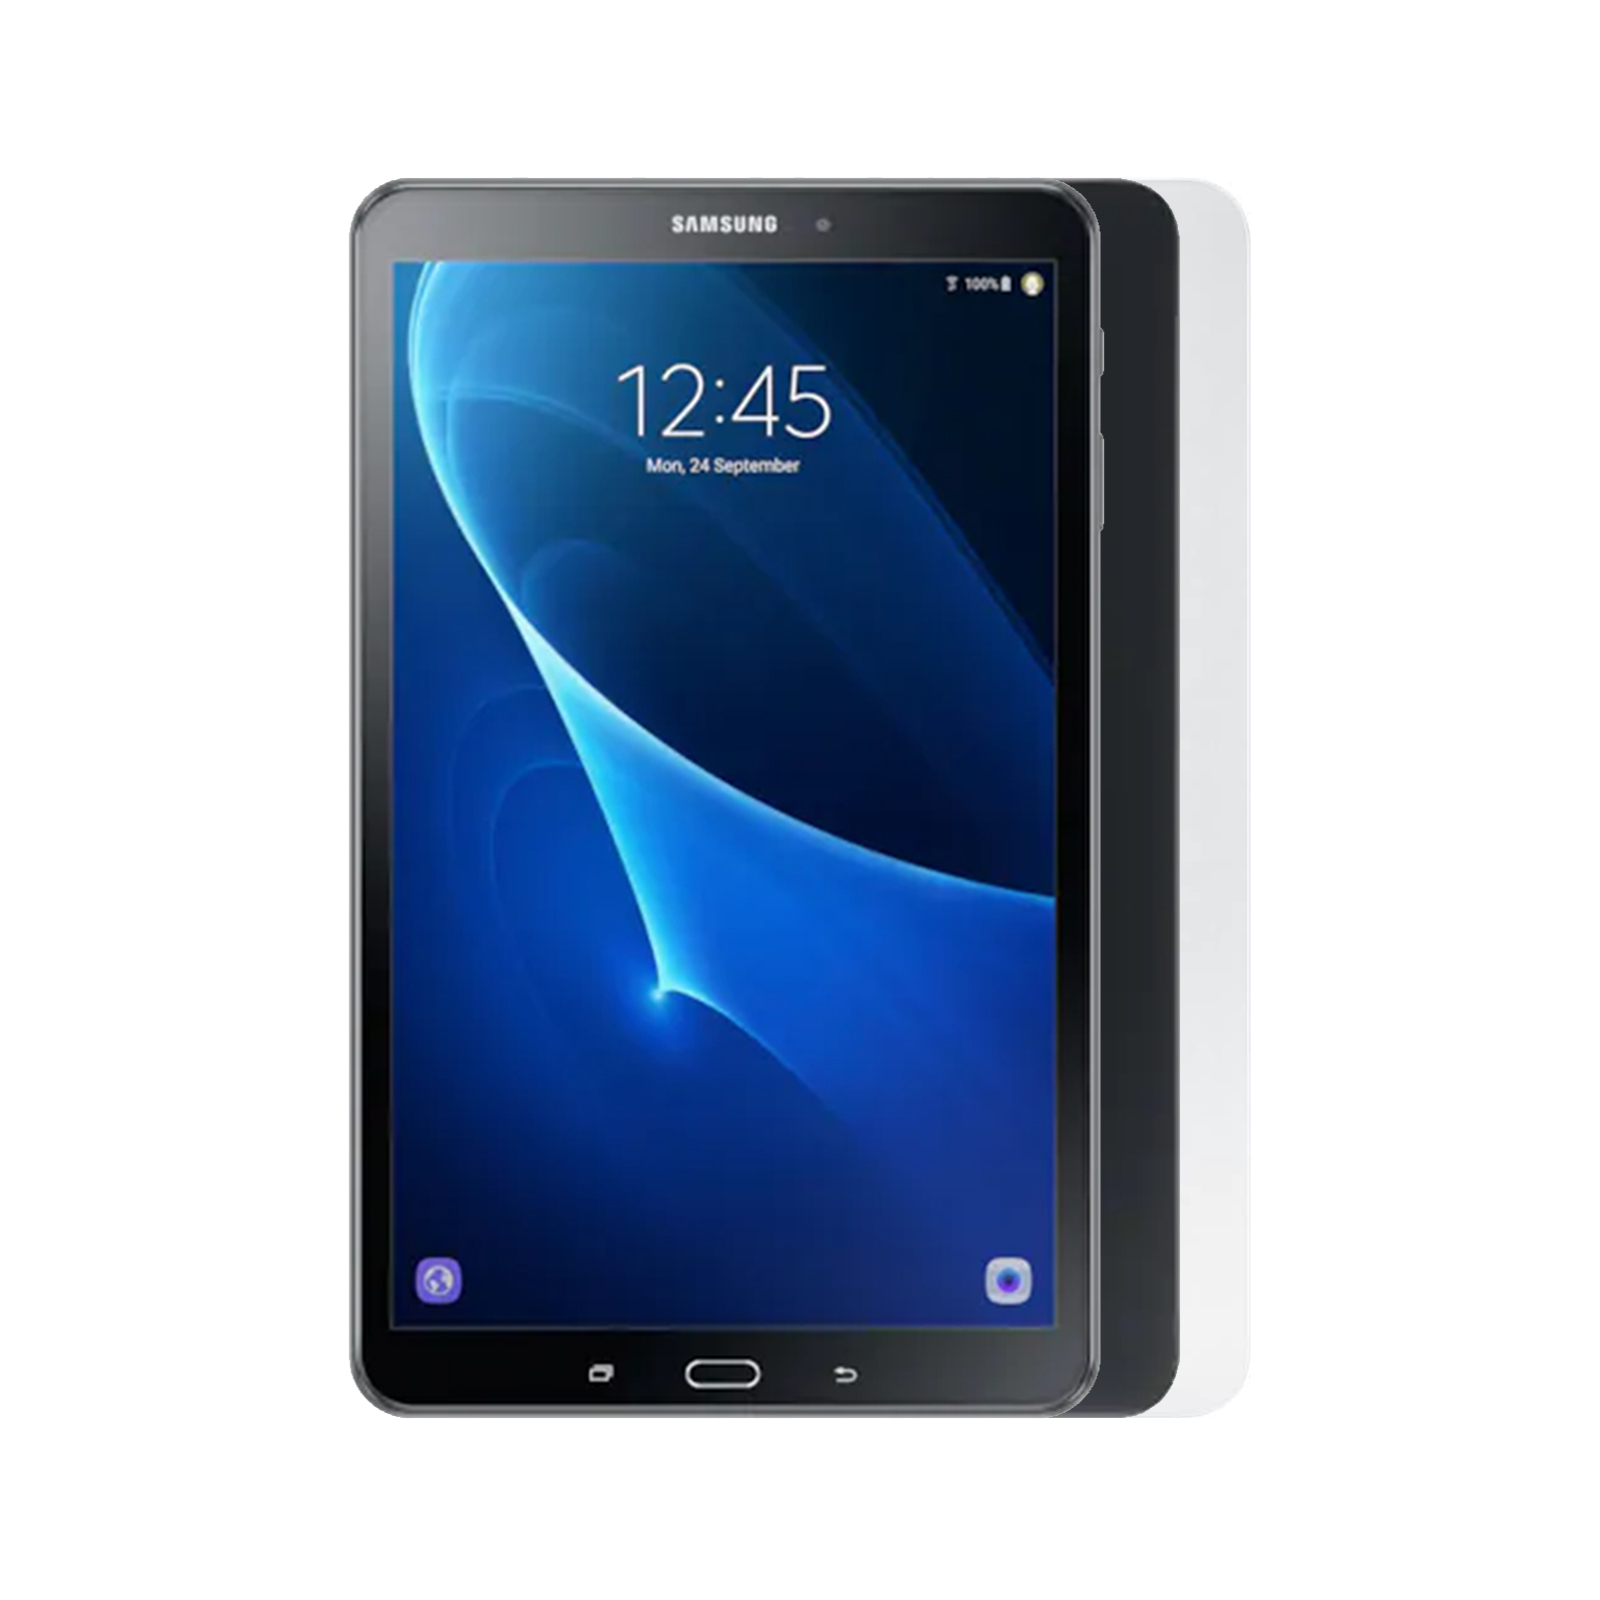 Samsung Galaxy Tab A 10.1 T580 - As New